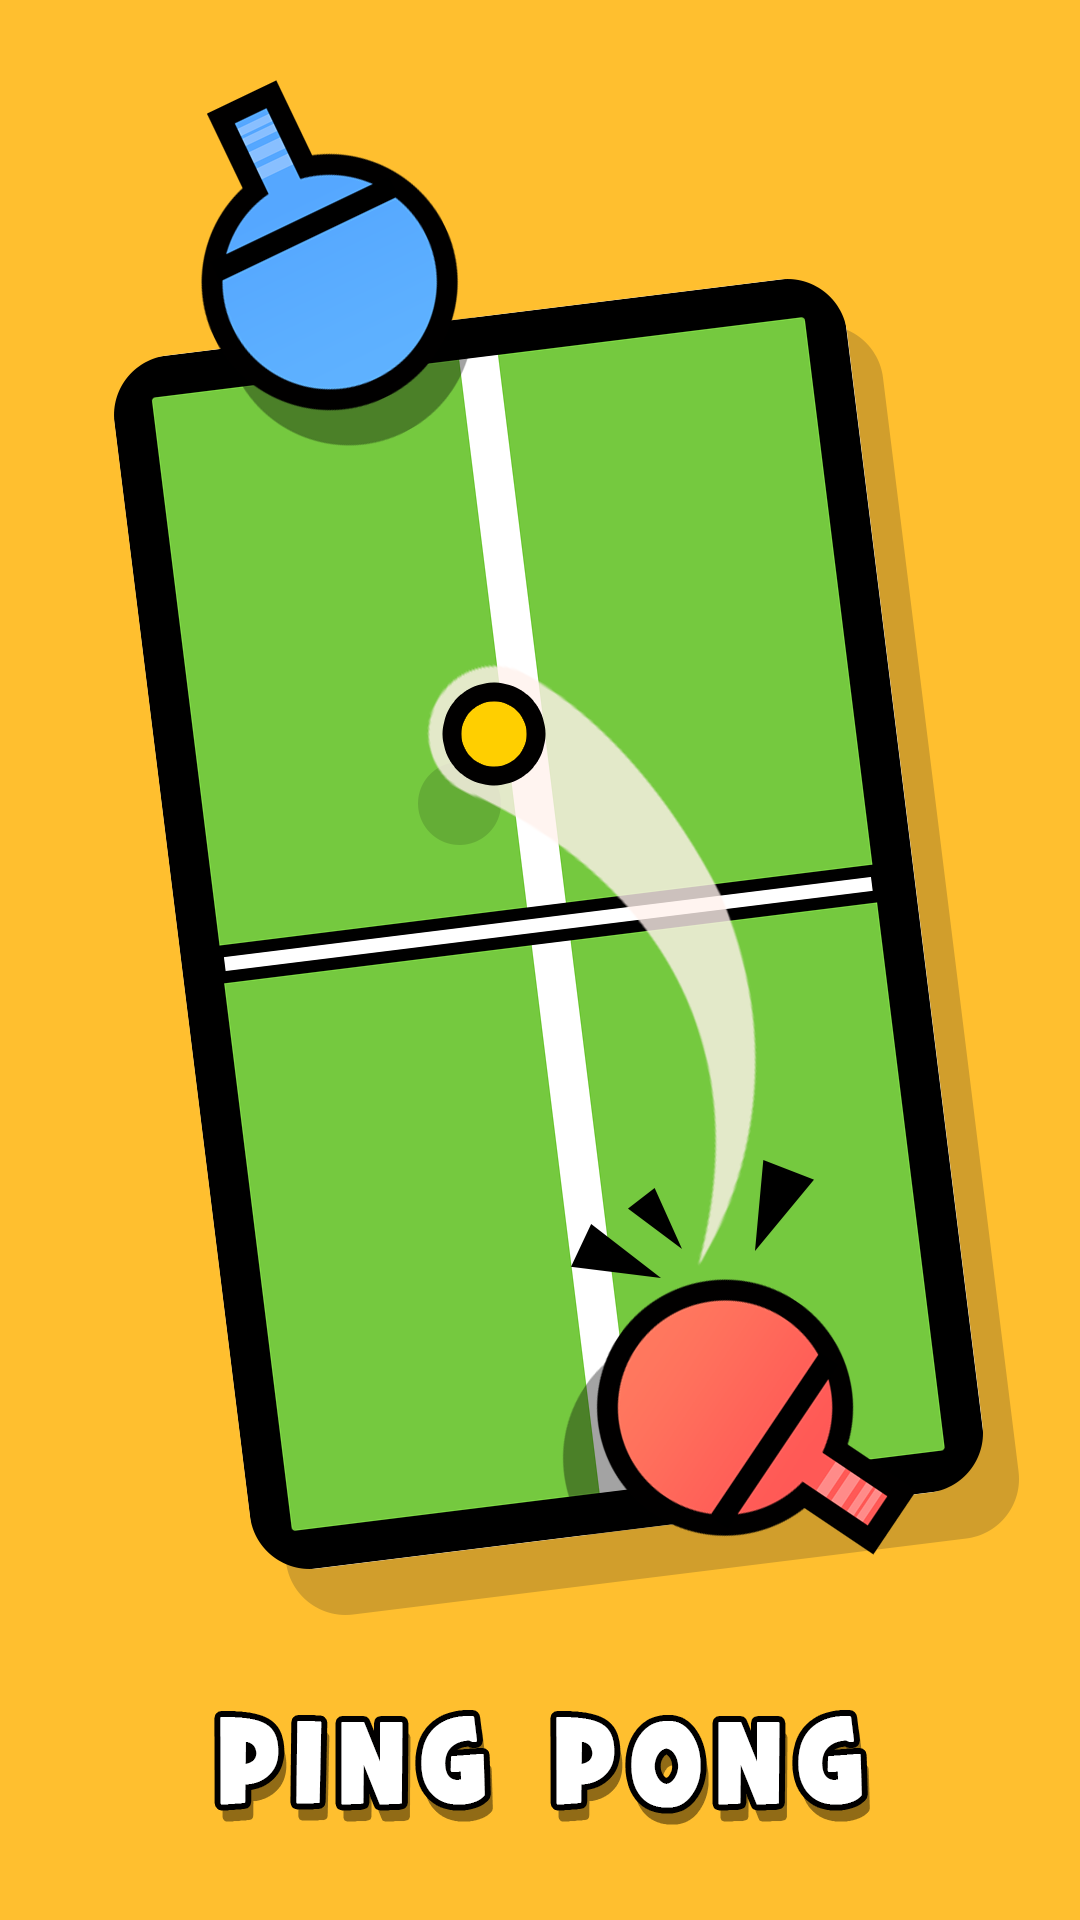 Juegos para 2 jugadores version móvil androide iOS descargar apk